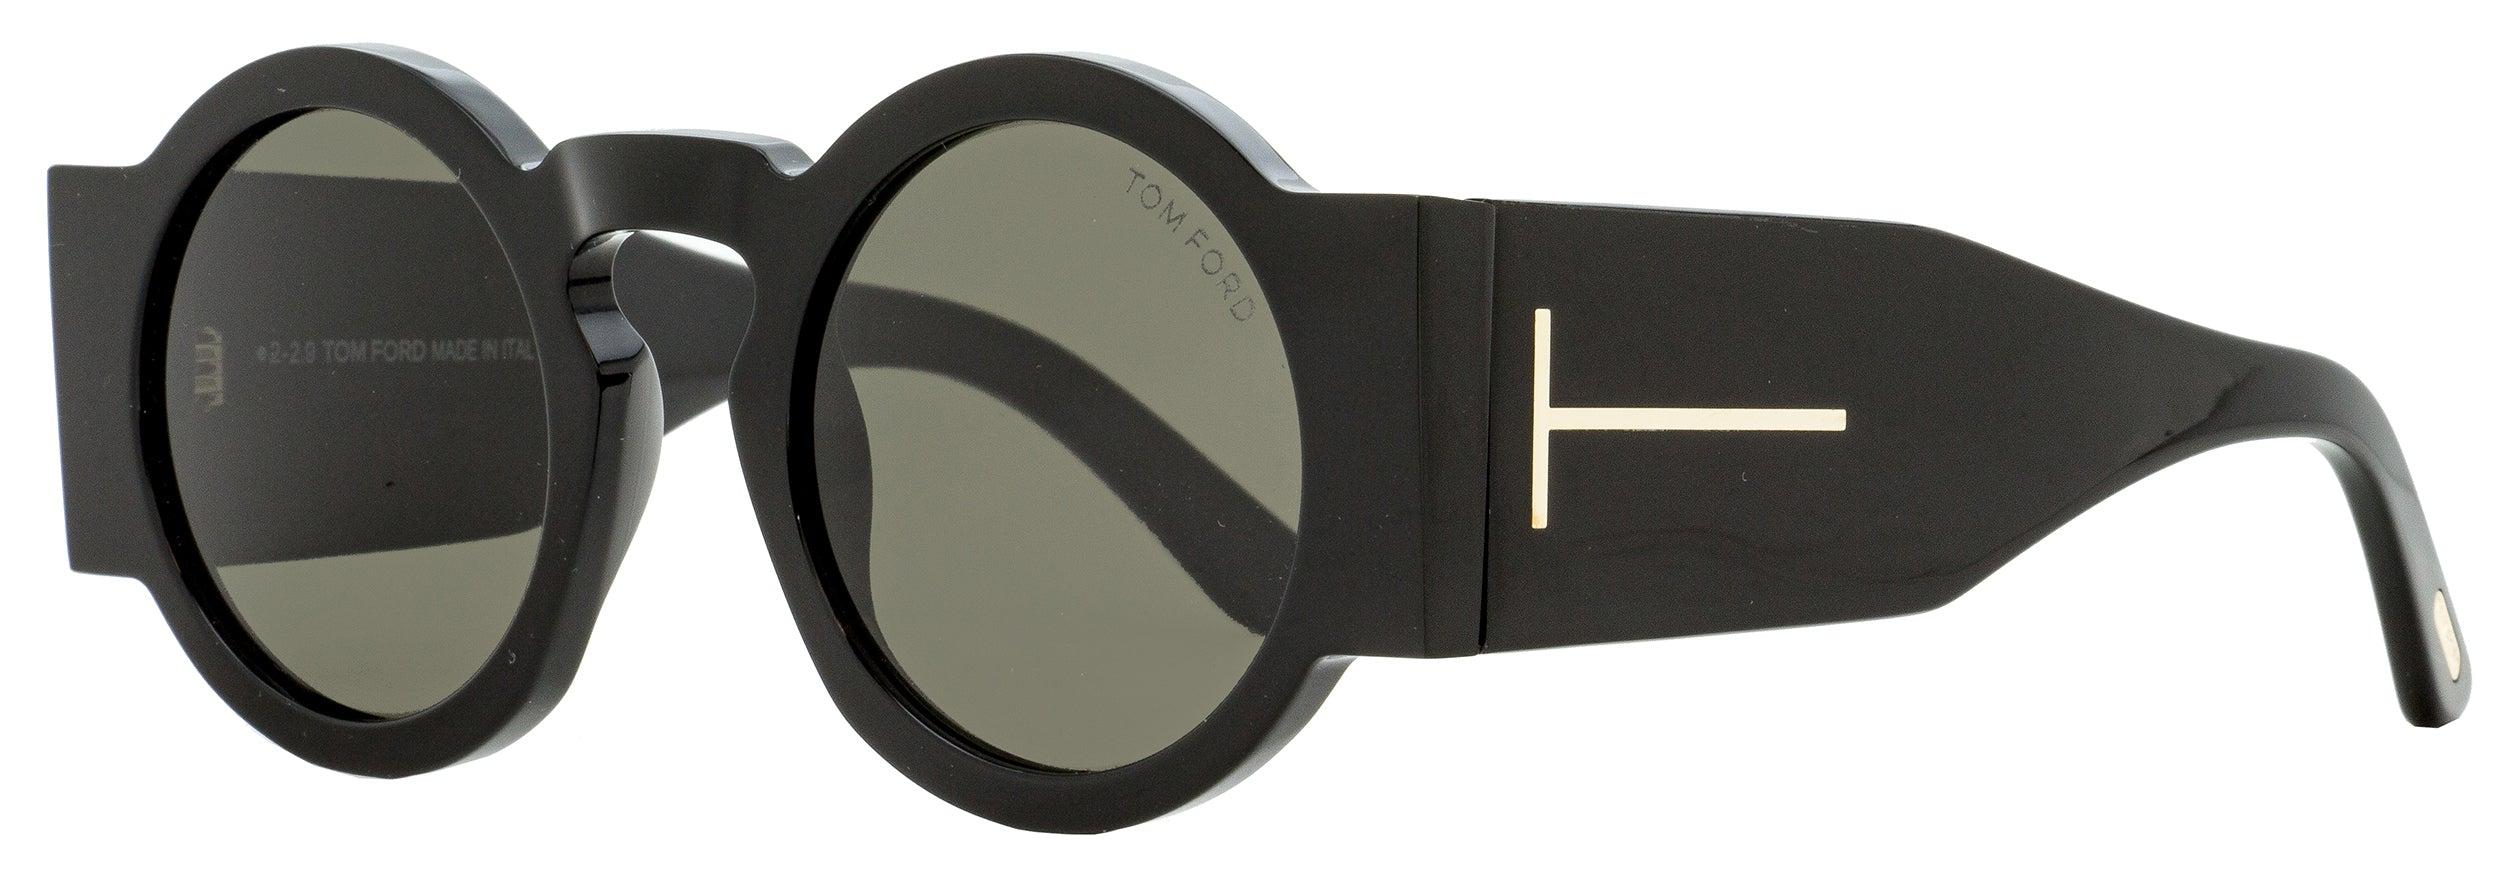 Tom Ford Round Sunglasses Tf603 Tatiana-02 Black 47mm | Lyst